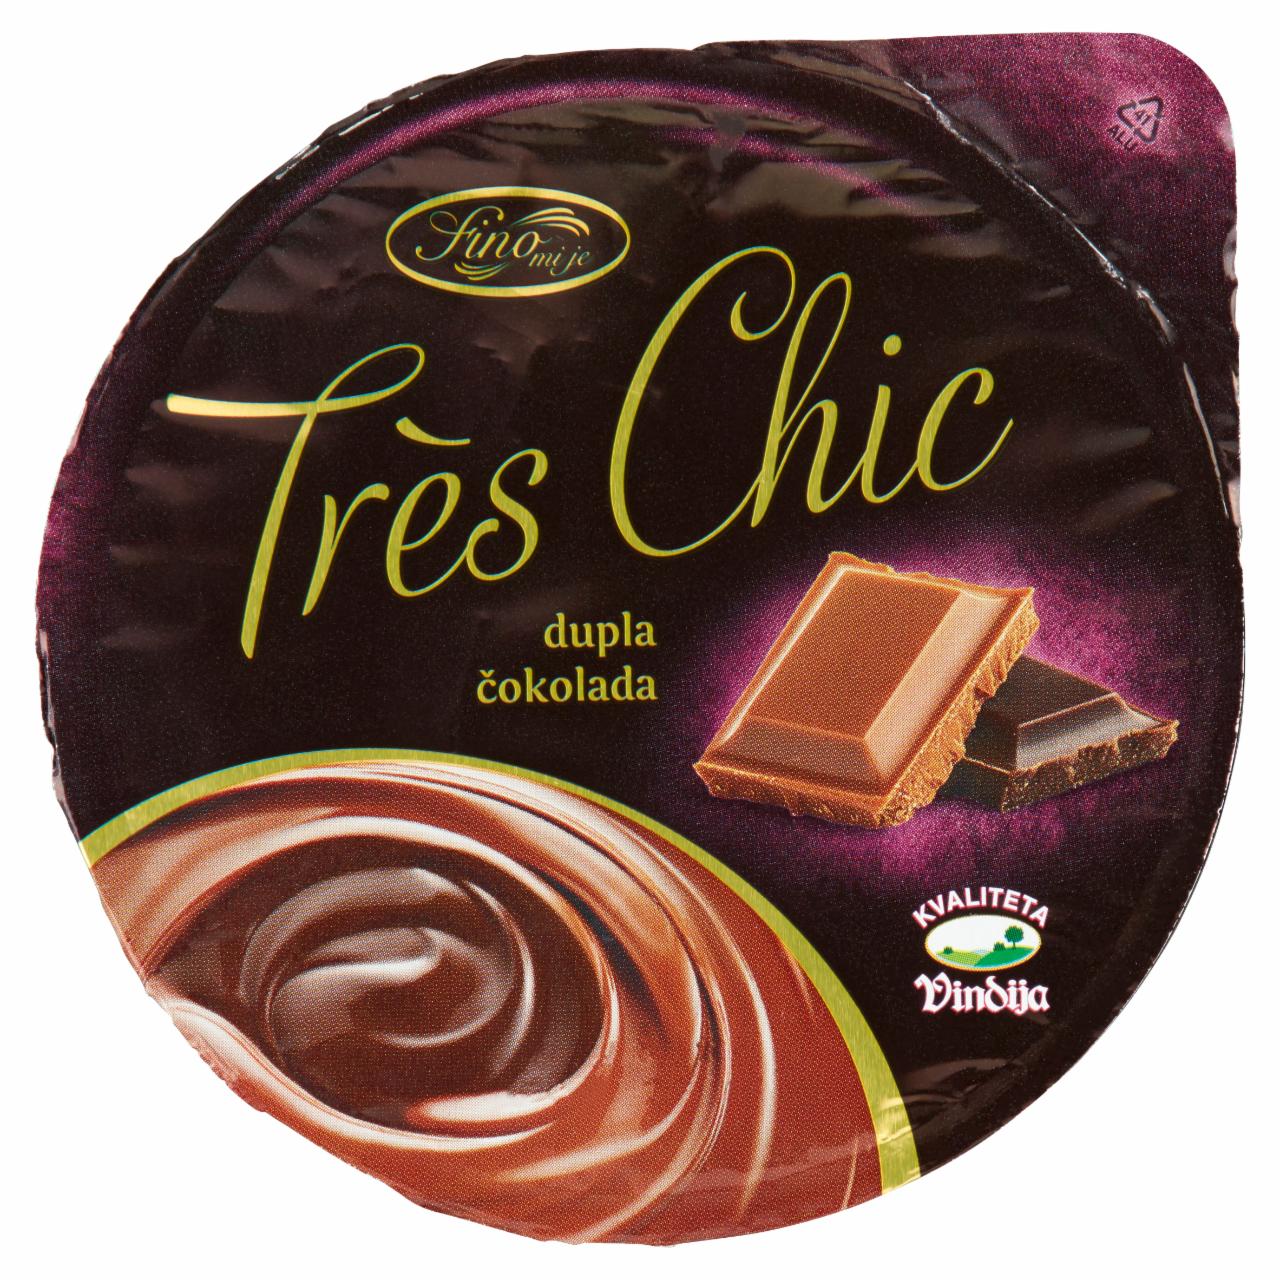 Képek - Trés Chic dupla csokoládés puding 200 g